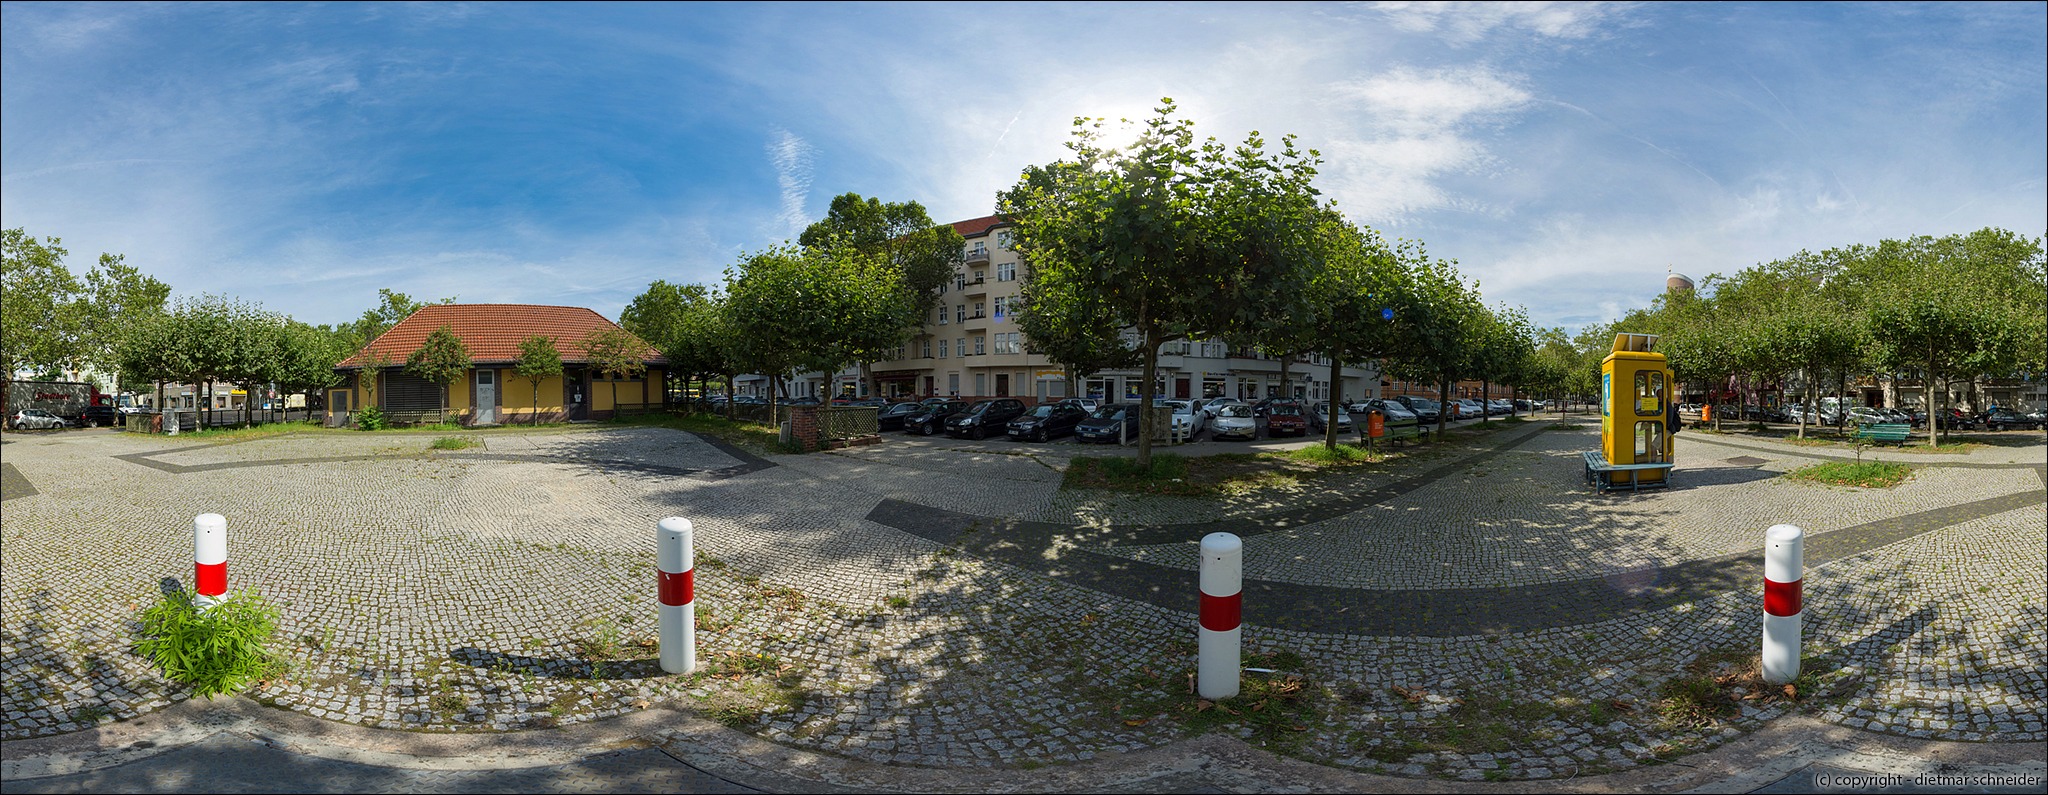 Read more about the article Mierendorffinsel – Mierendorffplatz – Höhe BücherboXX / Wochenmarkt (08.08.2017)